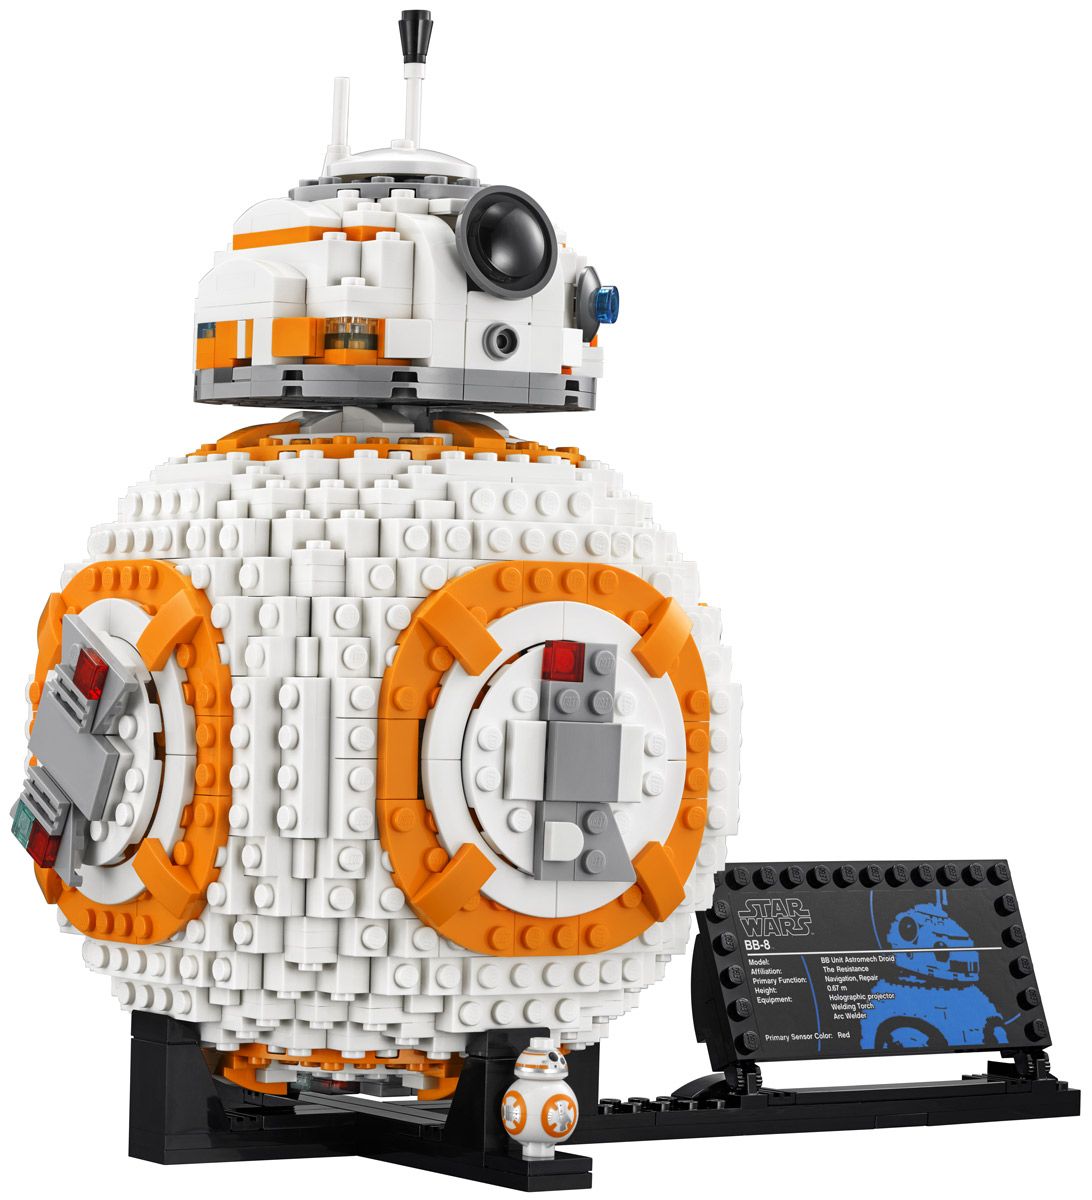 LEGO Star Wars 75187 -8 